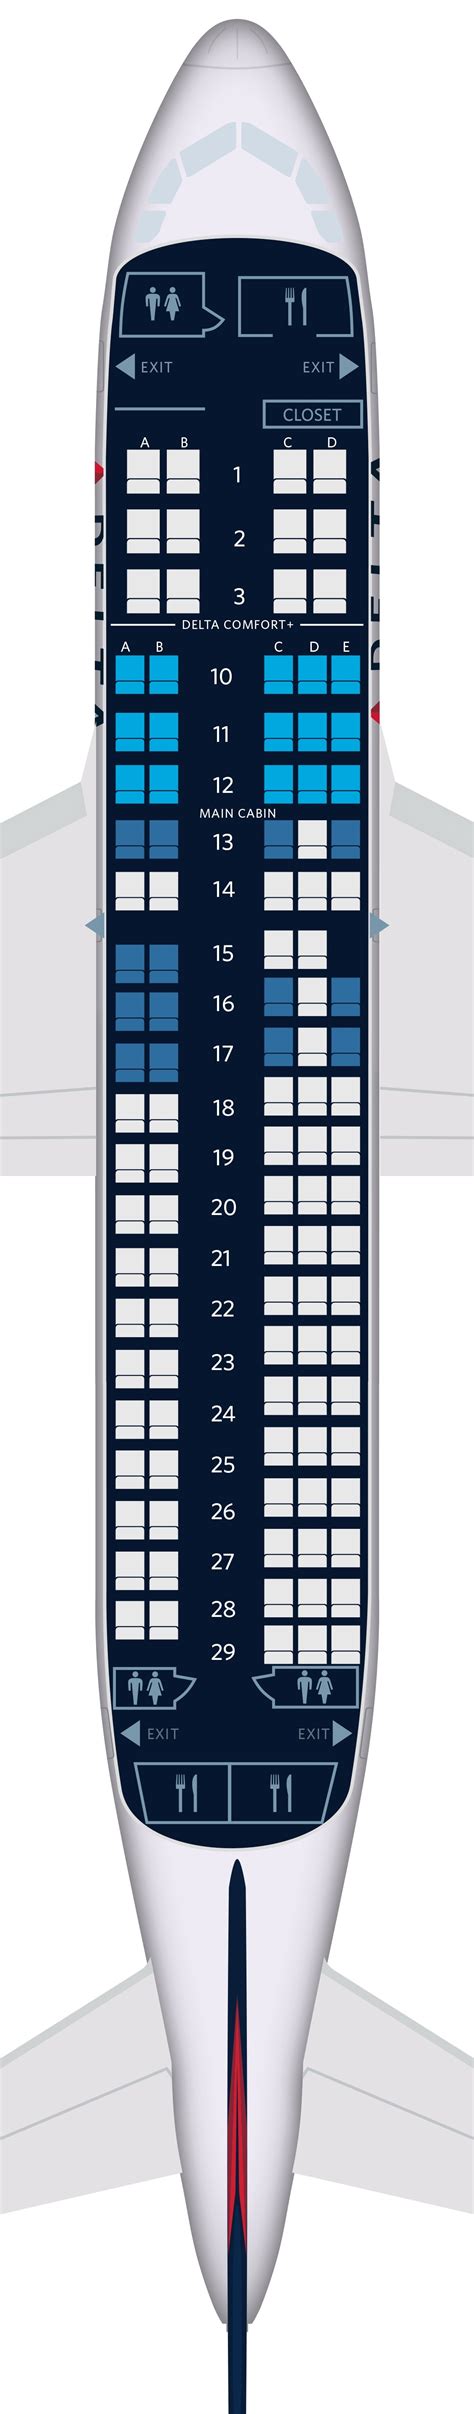 Narrative: Airbus A220 2019-present · Delta.com: A220-100 seat map · Delta News Hub: Video of Delta's A220-100 induction · Airbus.com: A220 development,&nb...